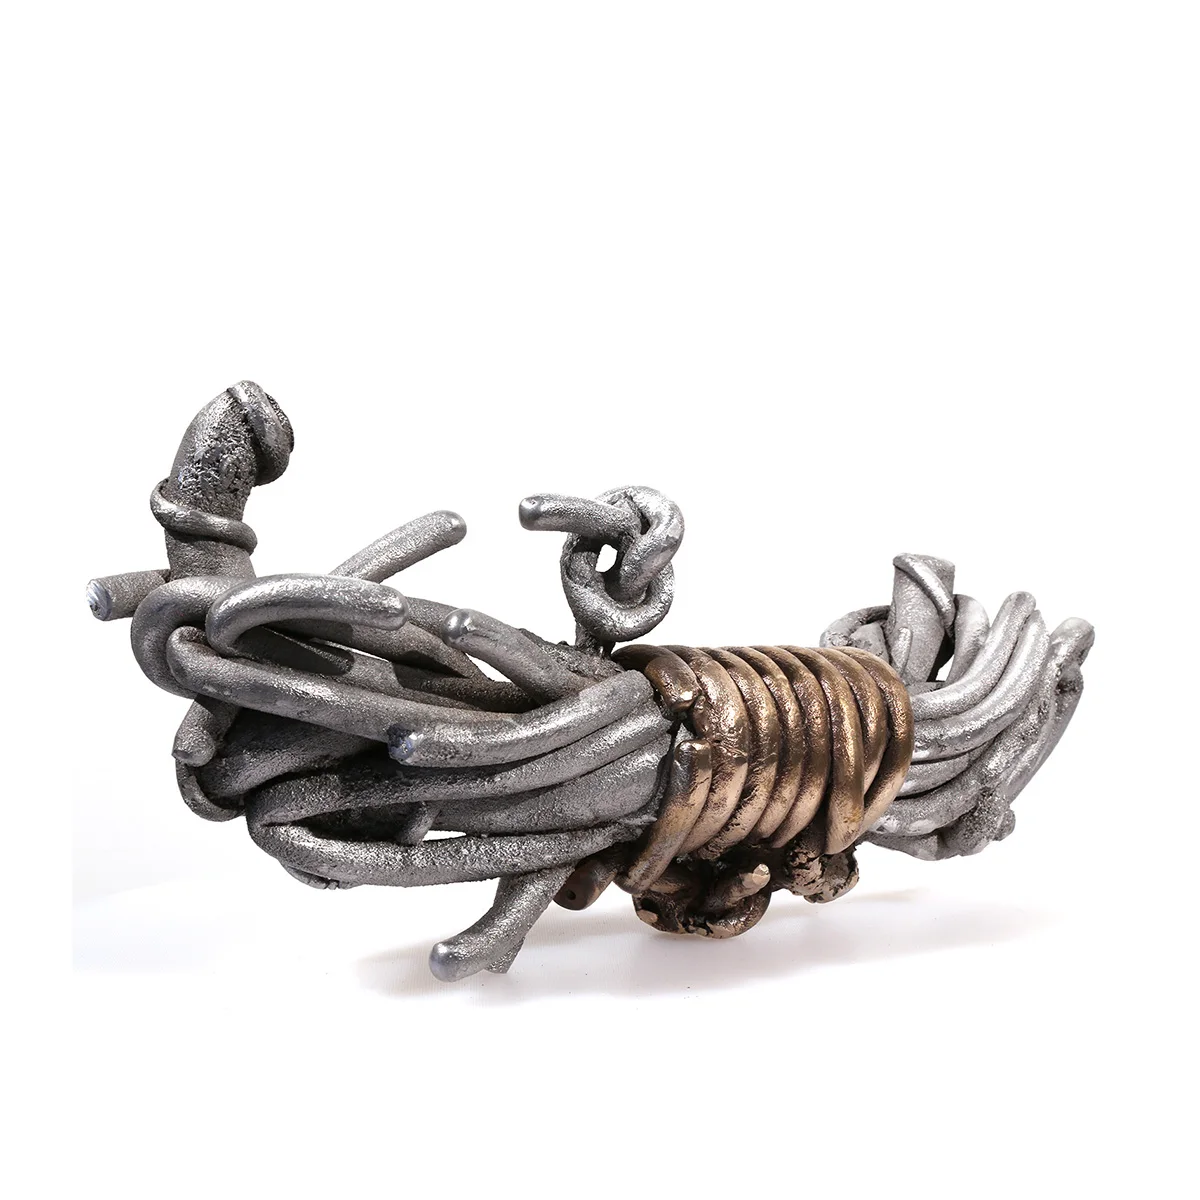 Ringed Bundle | aluminum & bronze | 6 x 16 1/2 x 7 inches -Knot- Pure- Knots- Sand-casted- aluminum - bronze -sculpture- by- Mel -Hantz